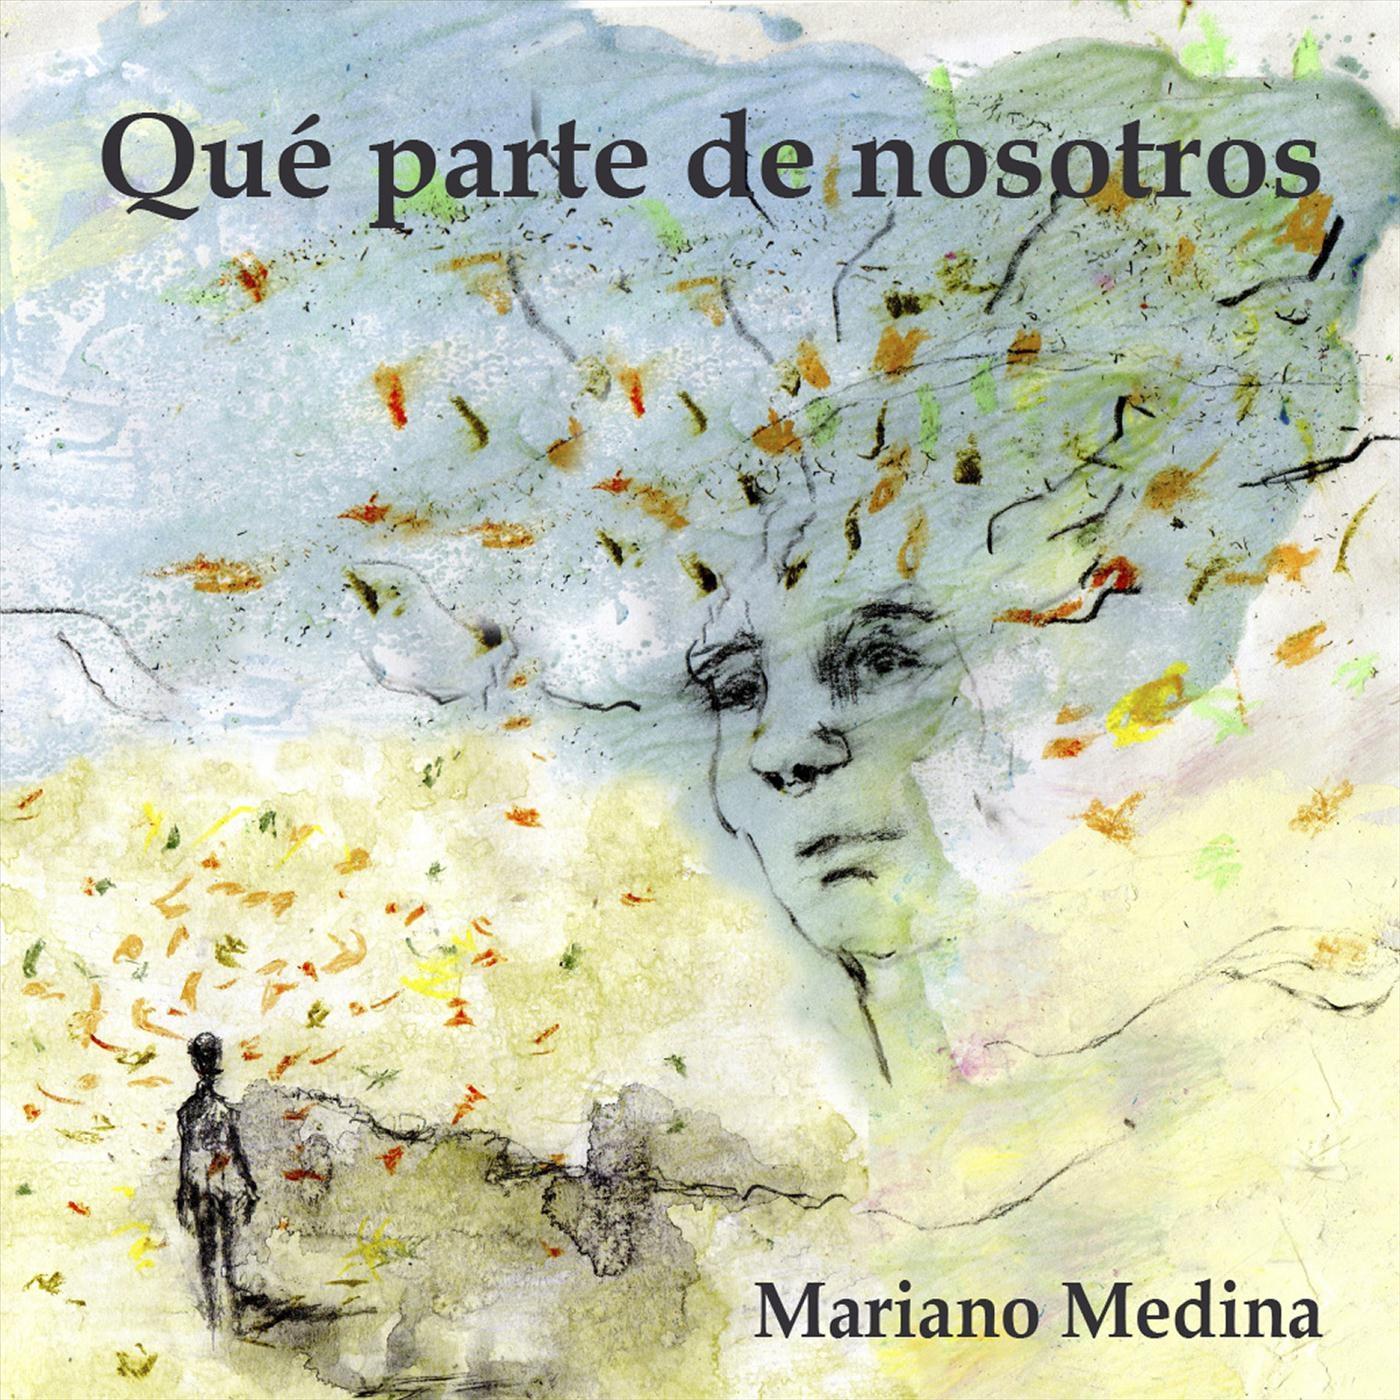 Mariano Medina - Iguanana (feat. Cristina Rolando)